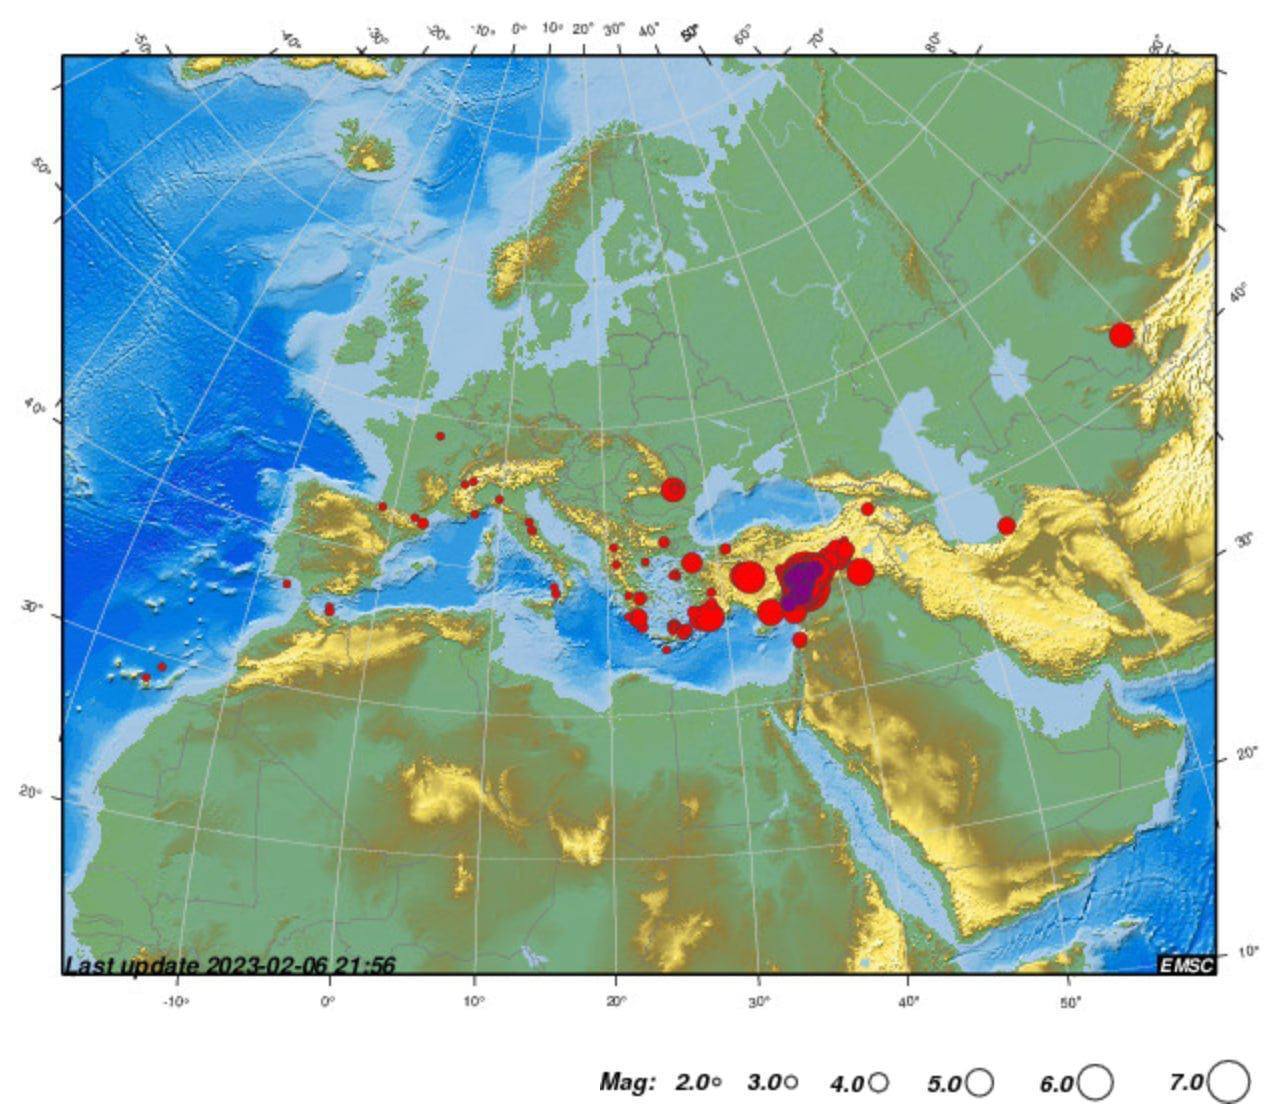 Планета збунтувалася: нові землетруси зафіксовано на Тайвані, Алясці, Туреччині та Аргентині. Карта